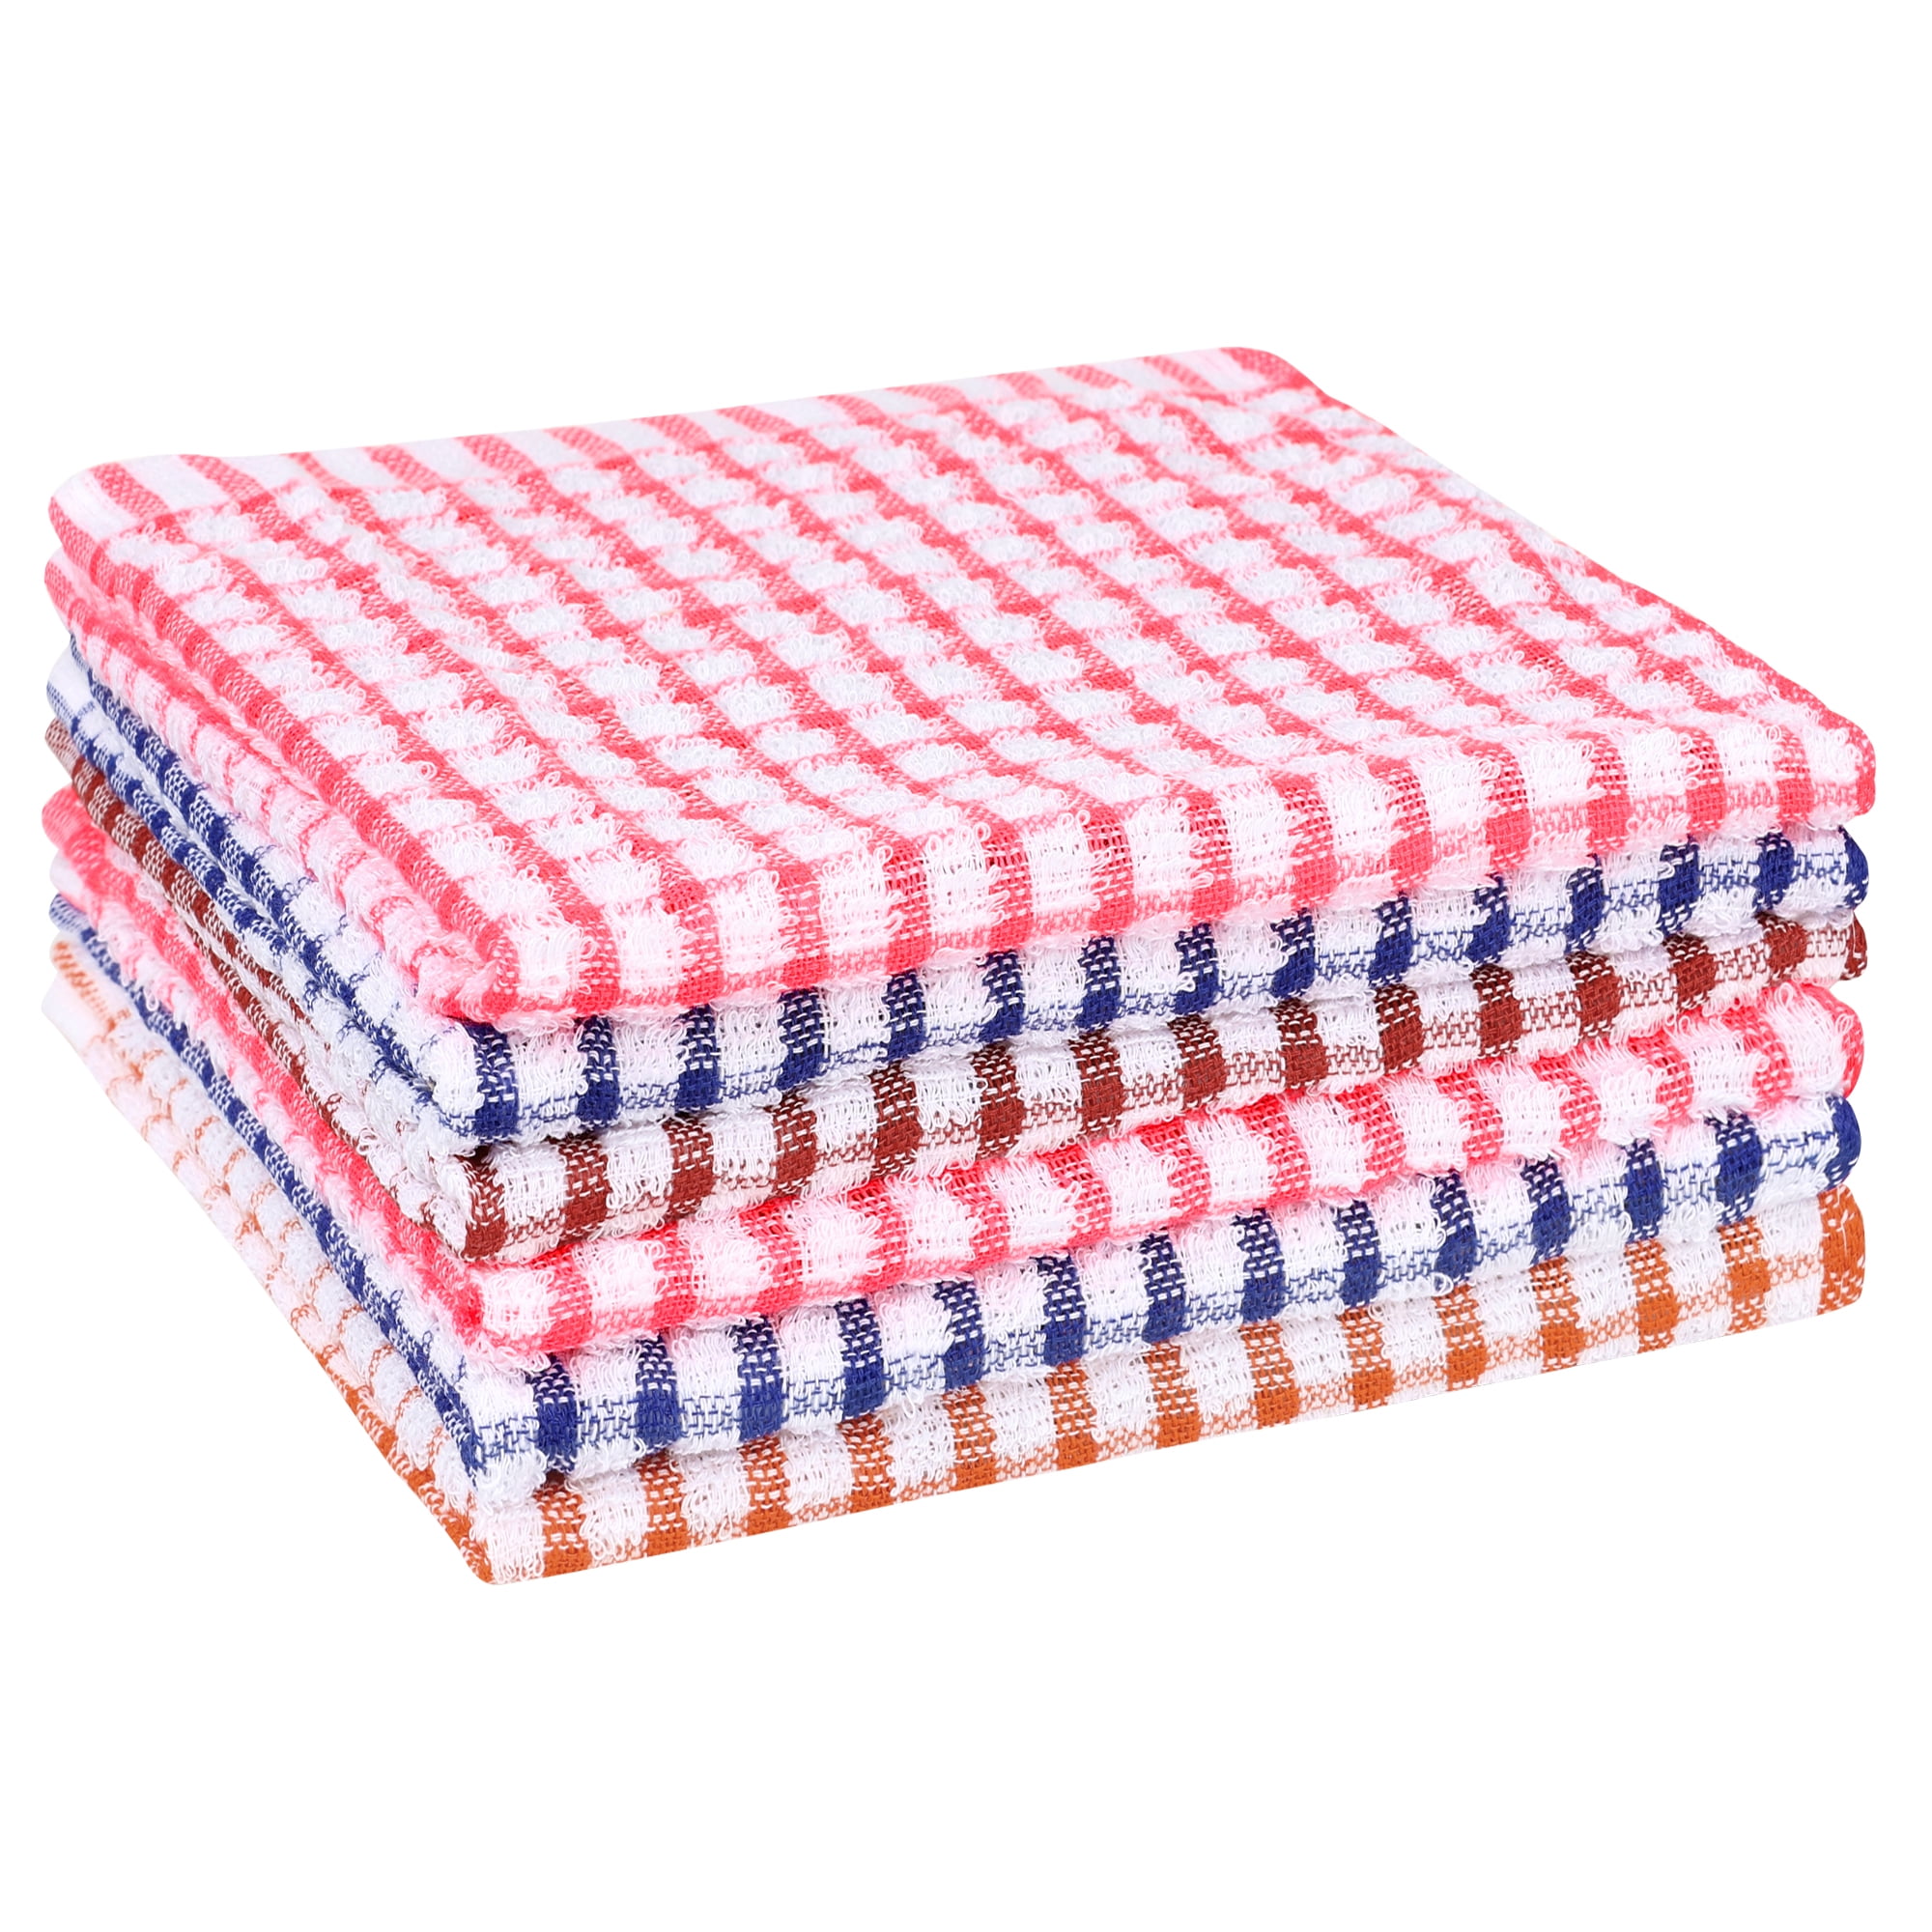 FitBest 6PCS Cotton Jacquard Checked Towel Kitchen Towel Tea Towel 